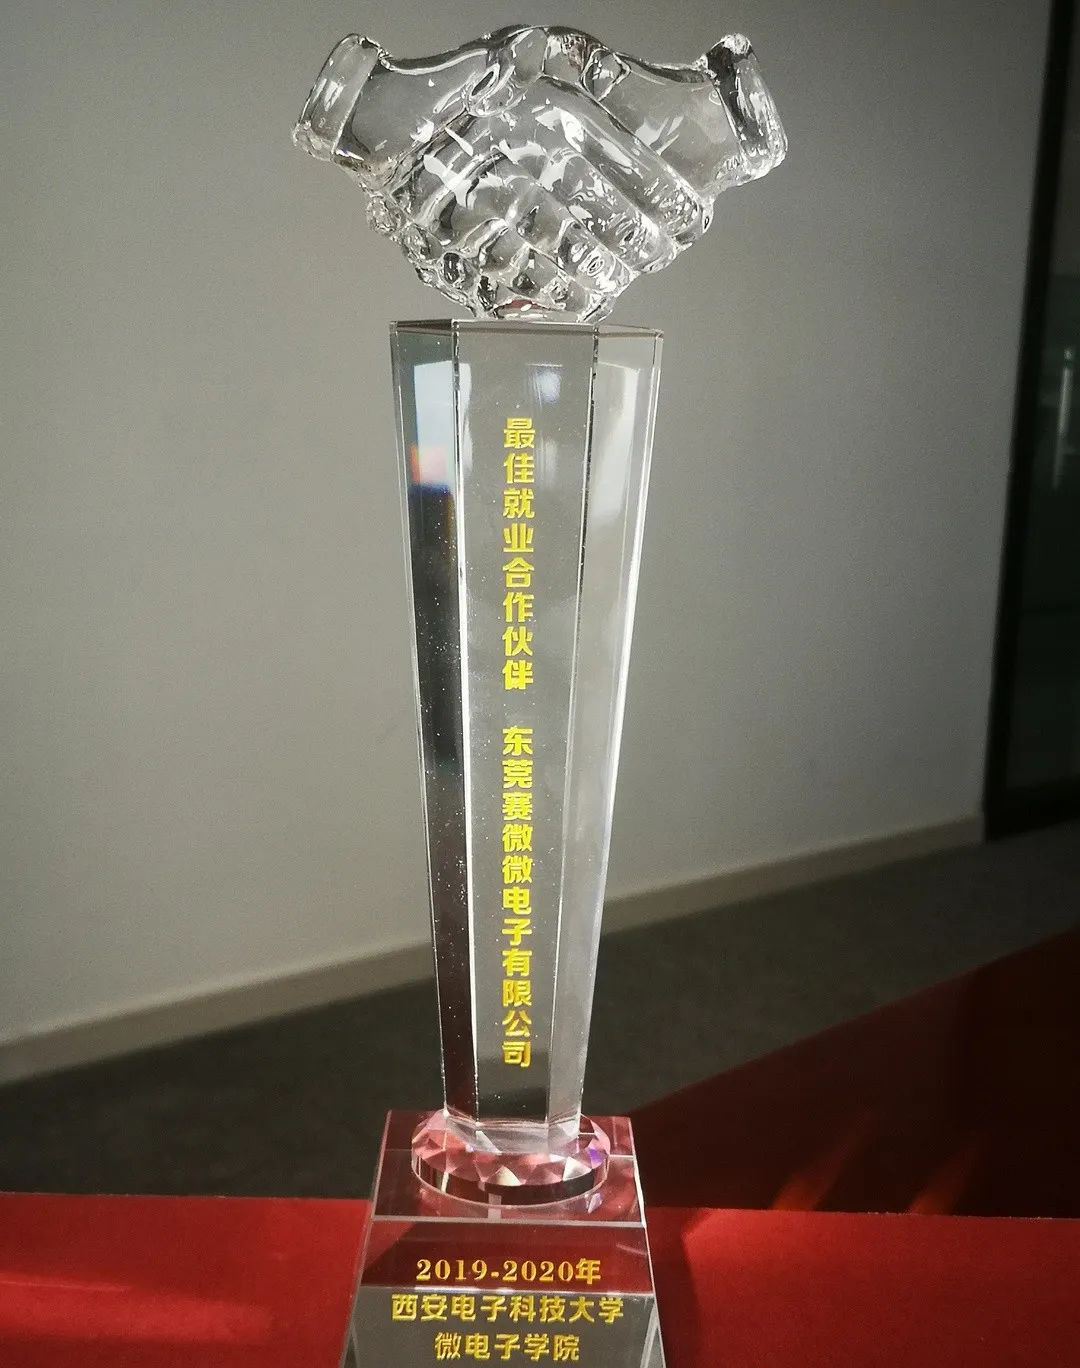 喜提西安电子科技大学微电子学院最佳就业合作伙伴奖